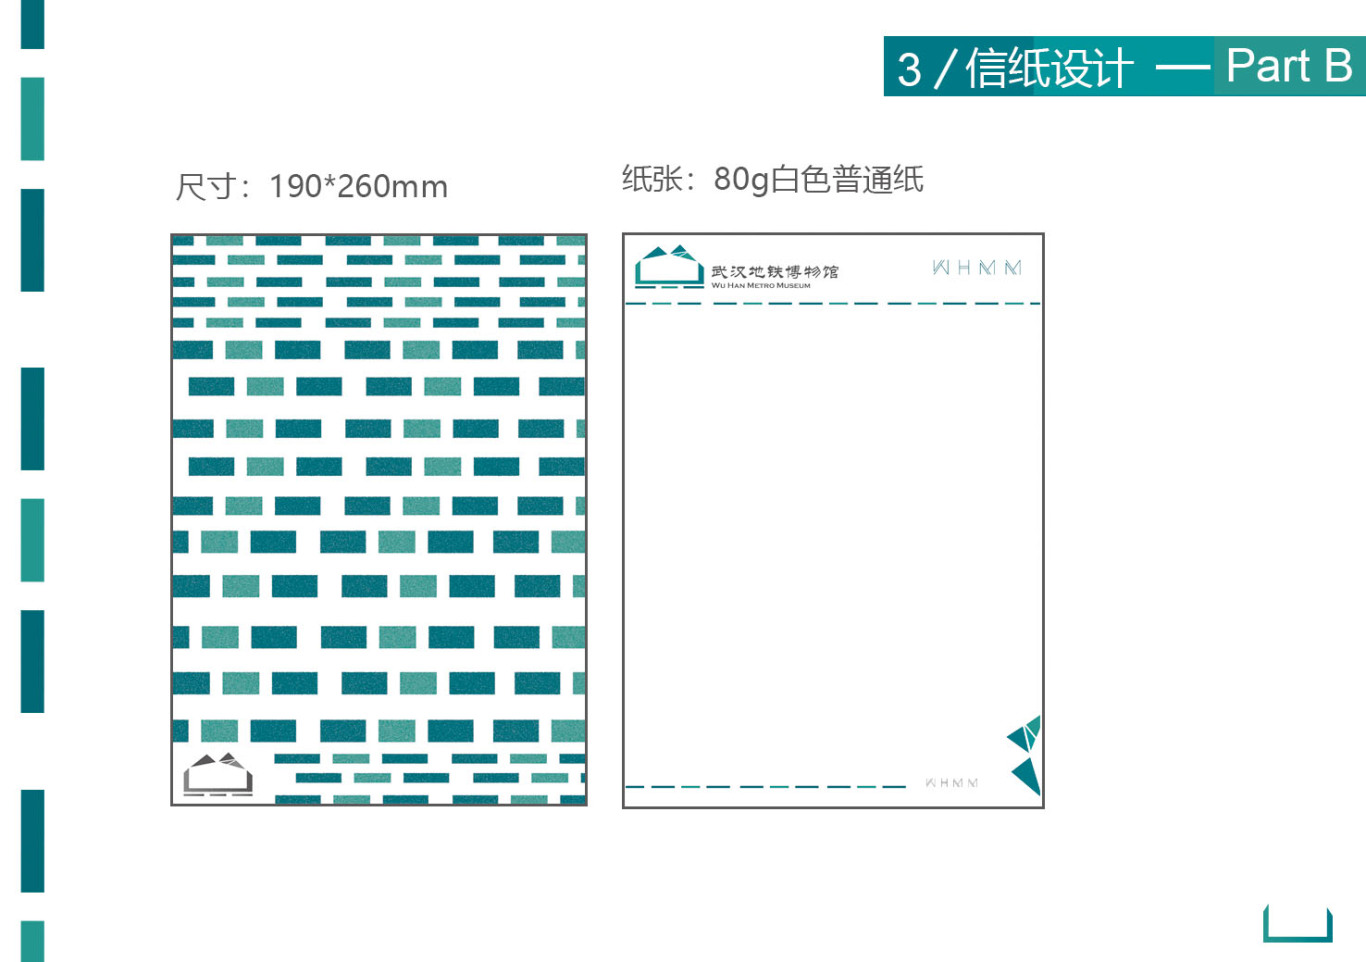 武漢地鐵博物館視覺識別設計圖10